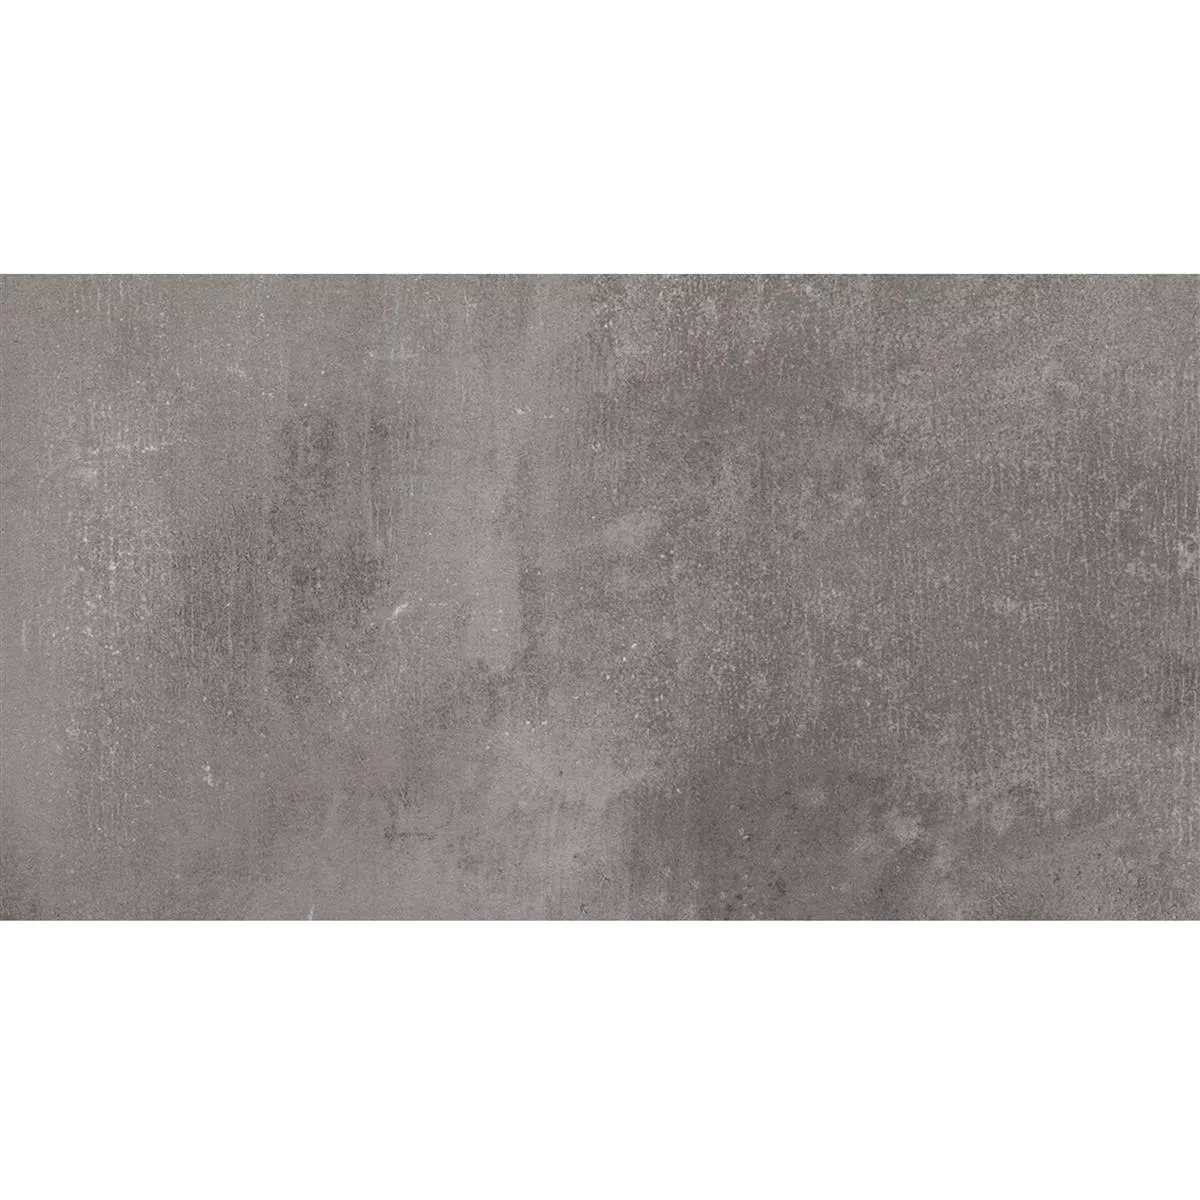 Muster von Bodenfliese Castlebrook Steinoptik Grau 30x60cm